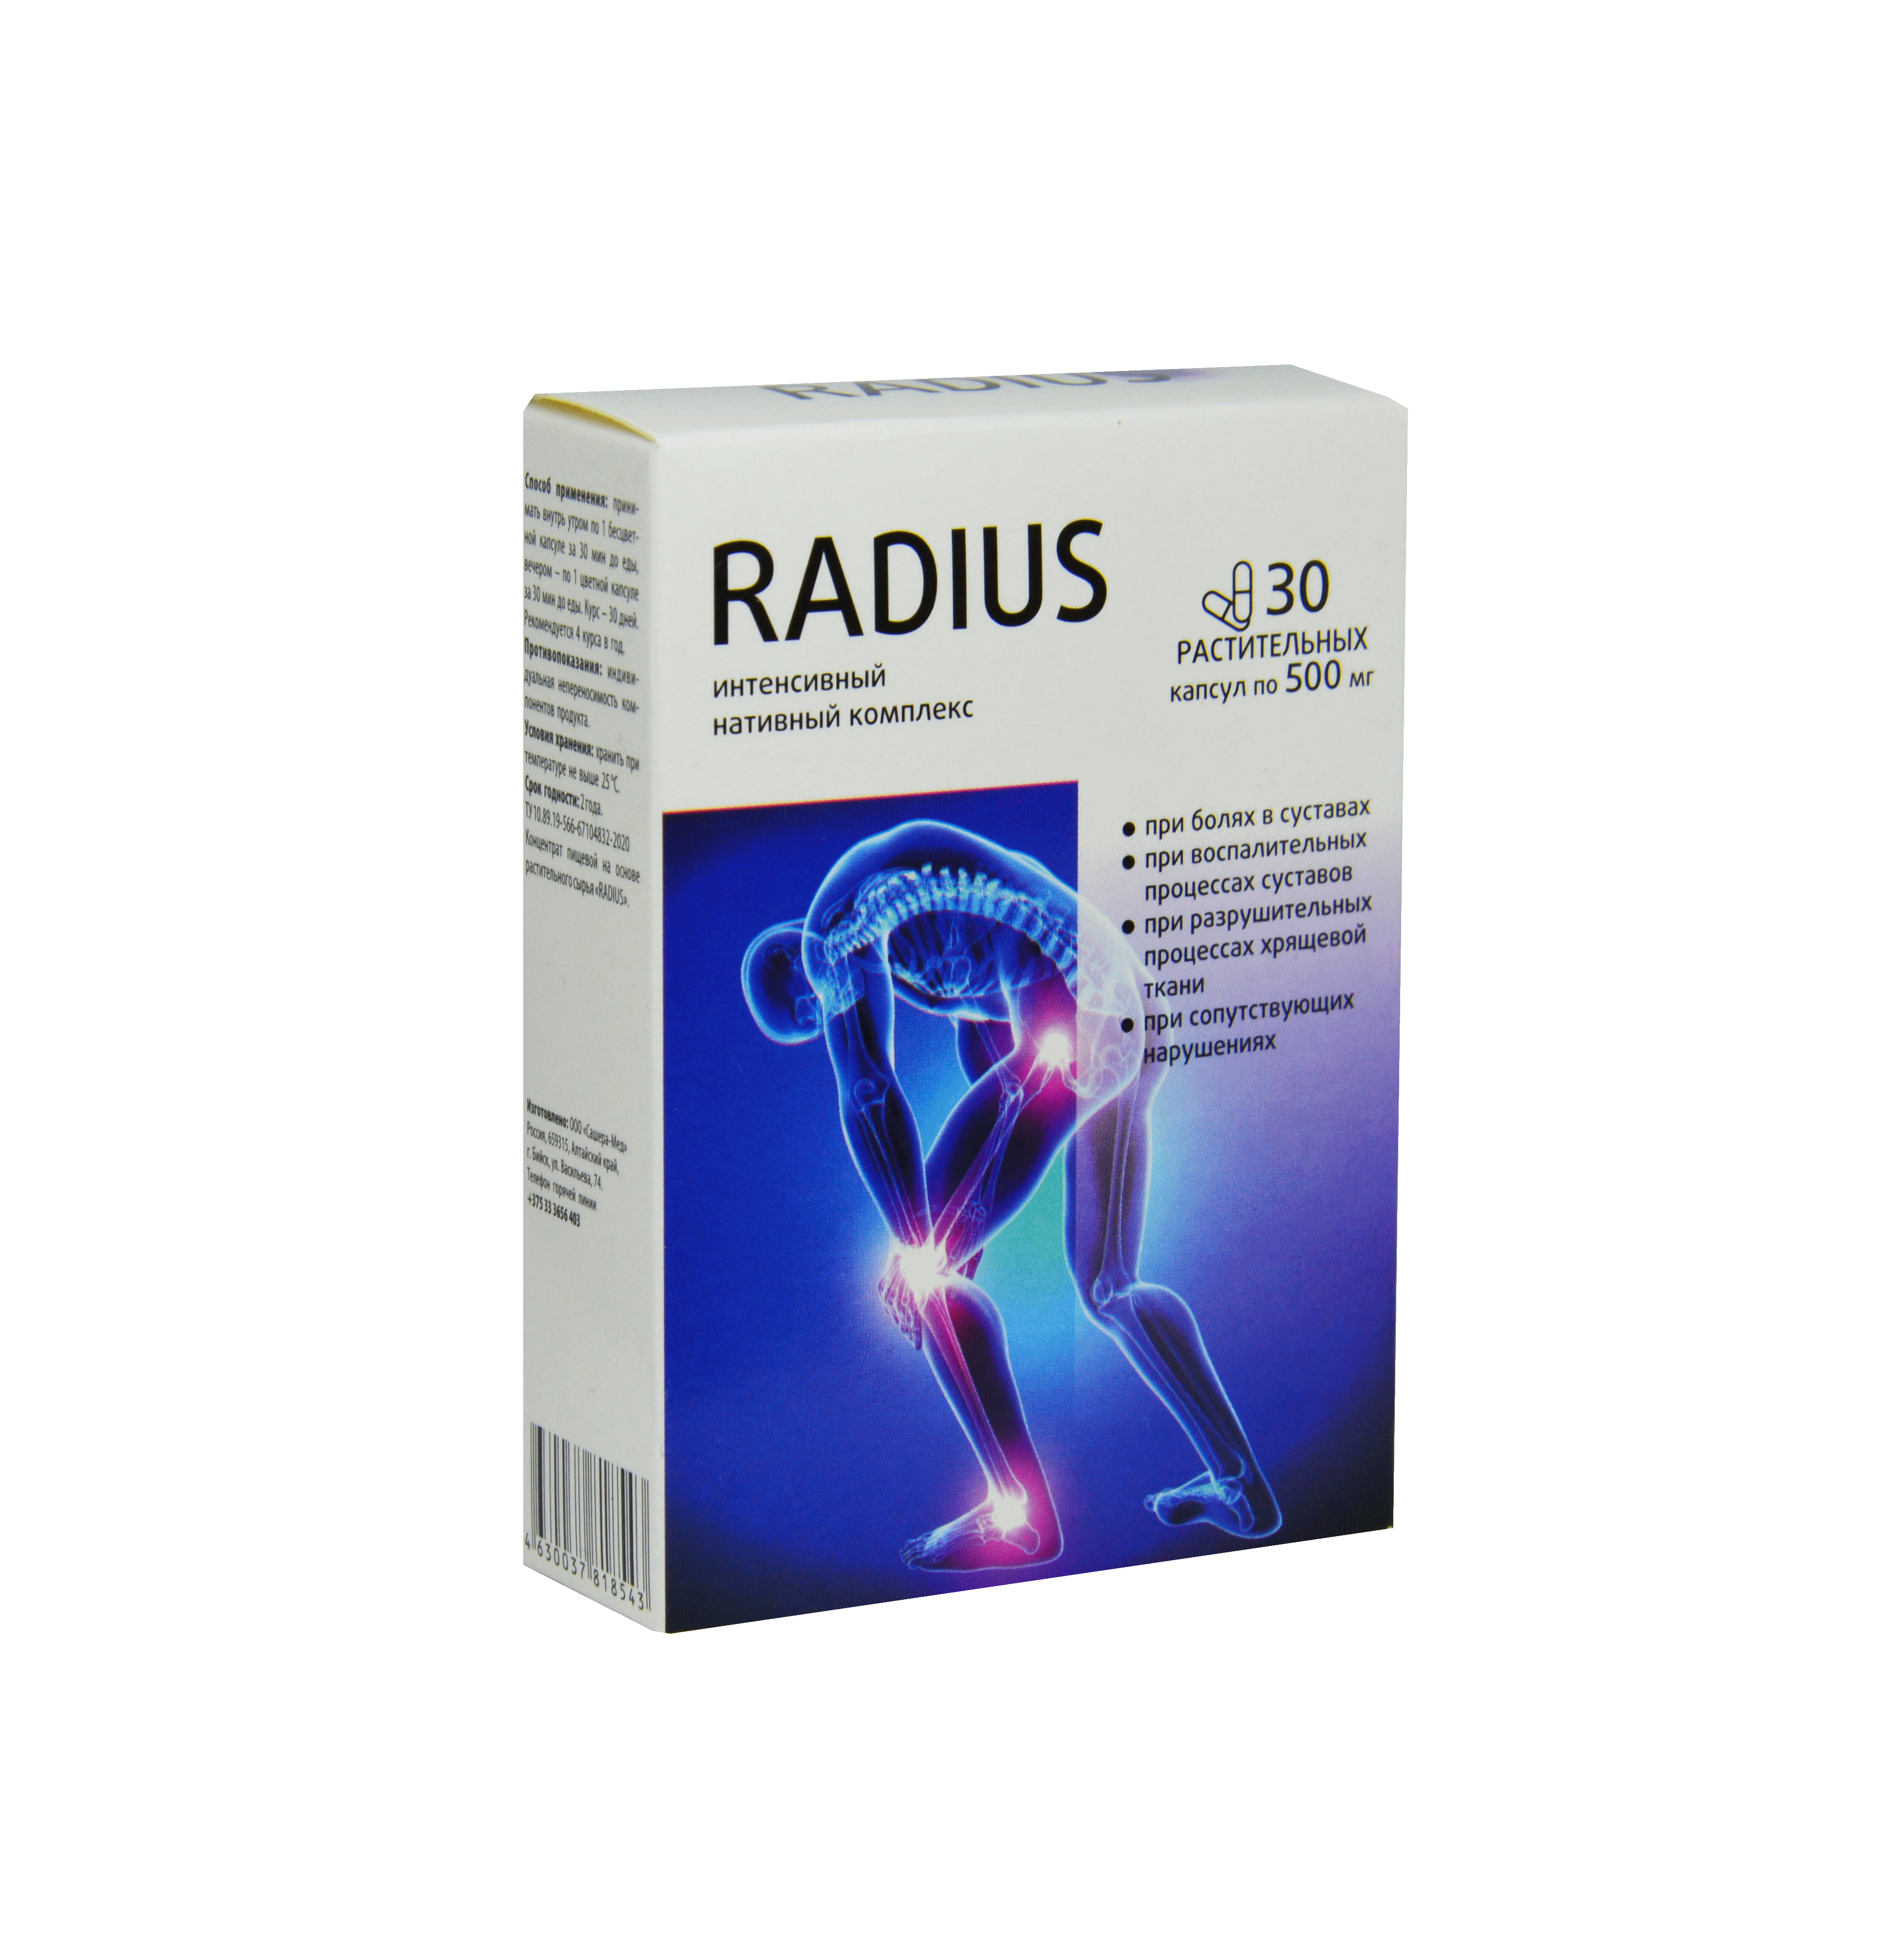 Radius - BY